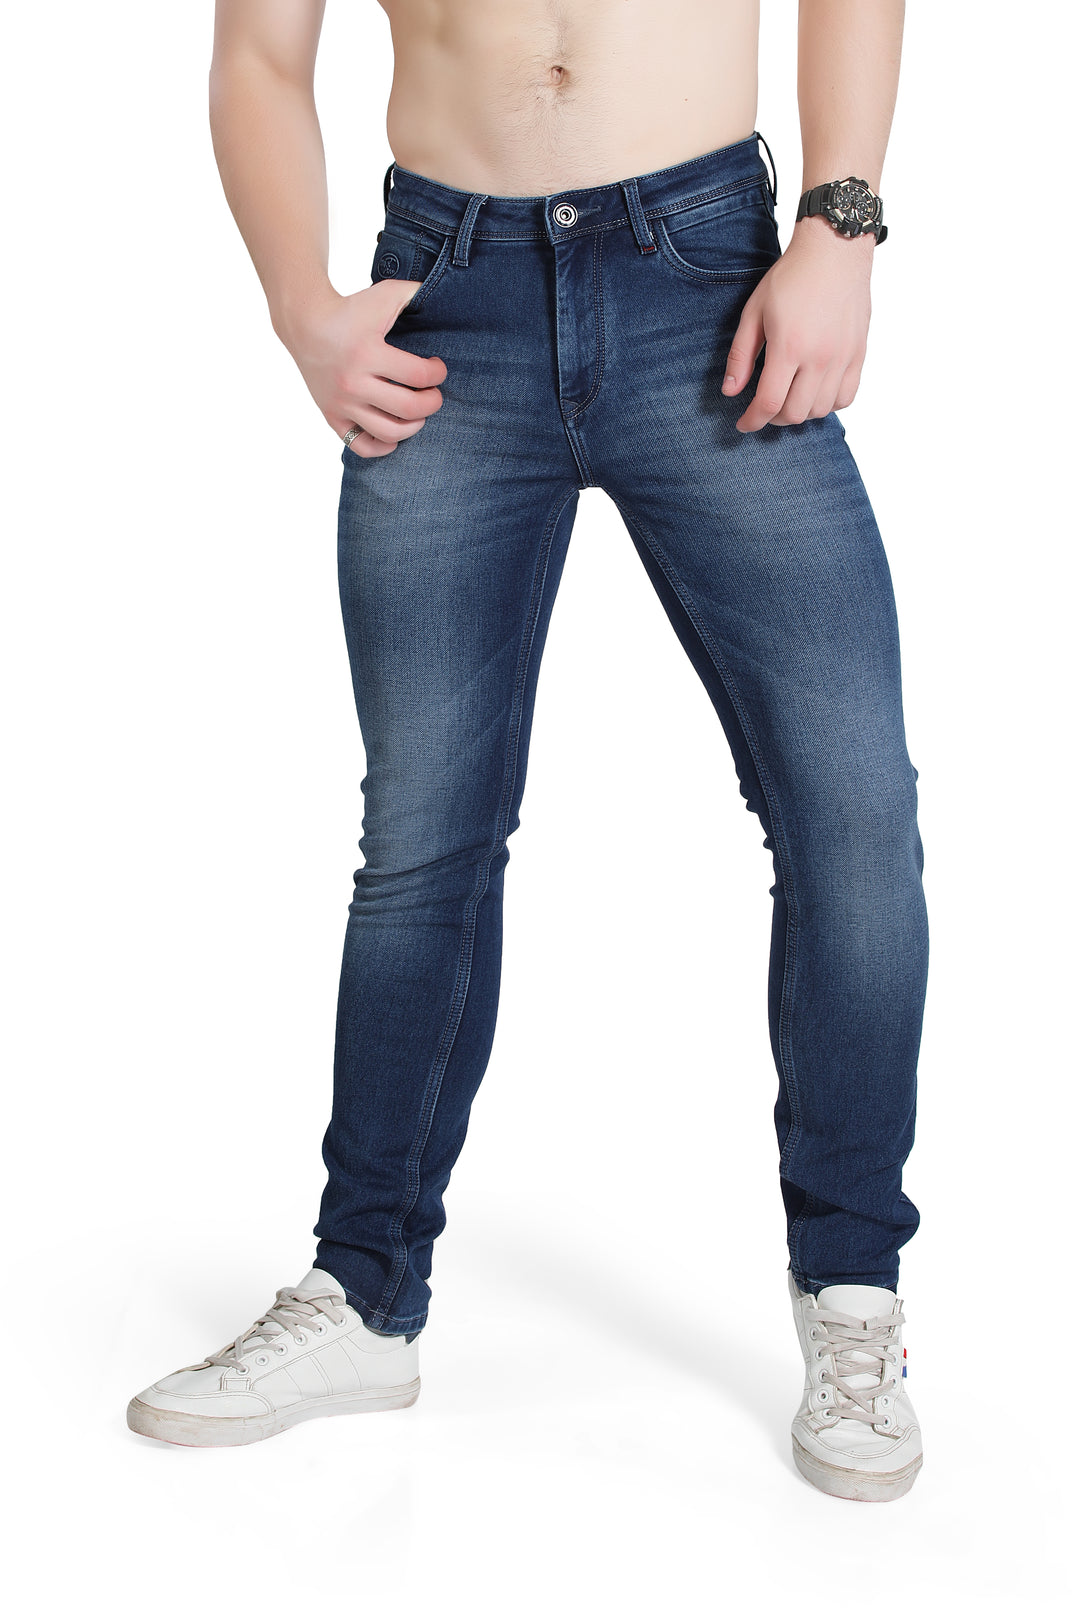 Black Tree Men's Designer Stretch Slim Fit Jeans for Men's BT002.